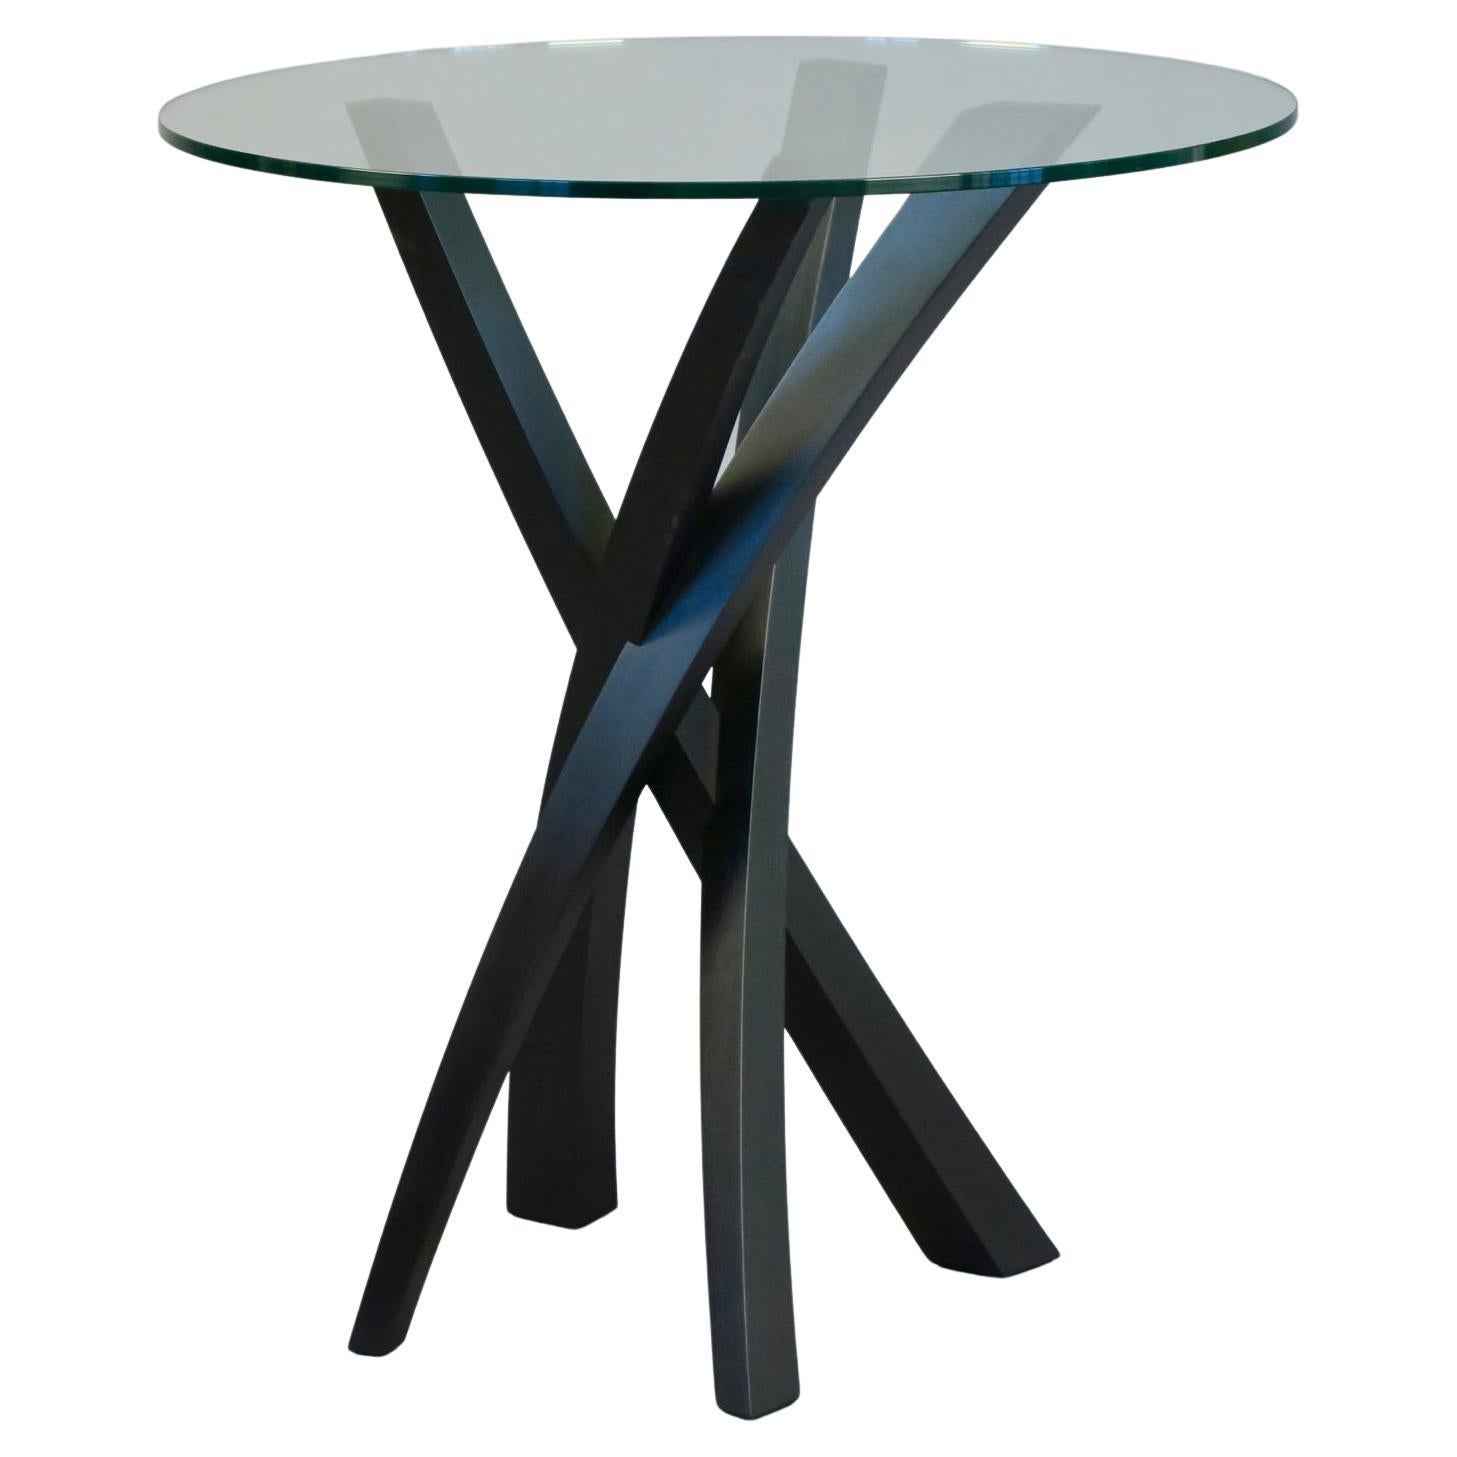 La table d'appoint Laguna présentée ici en noyer ébonisé et en verre peut être fabriquée dans des tailles et des formes personnalisées, ainsi que dans différents bois et finitions. Les mêmes détails de conception s'appliquent à toutes les variantes